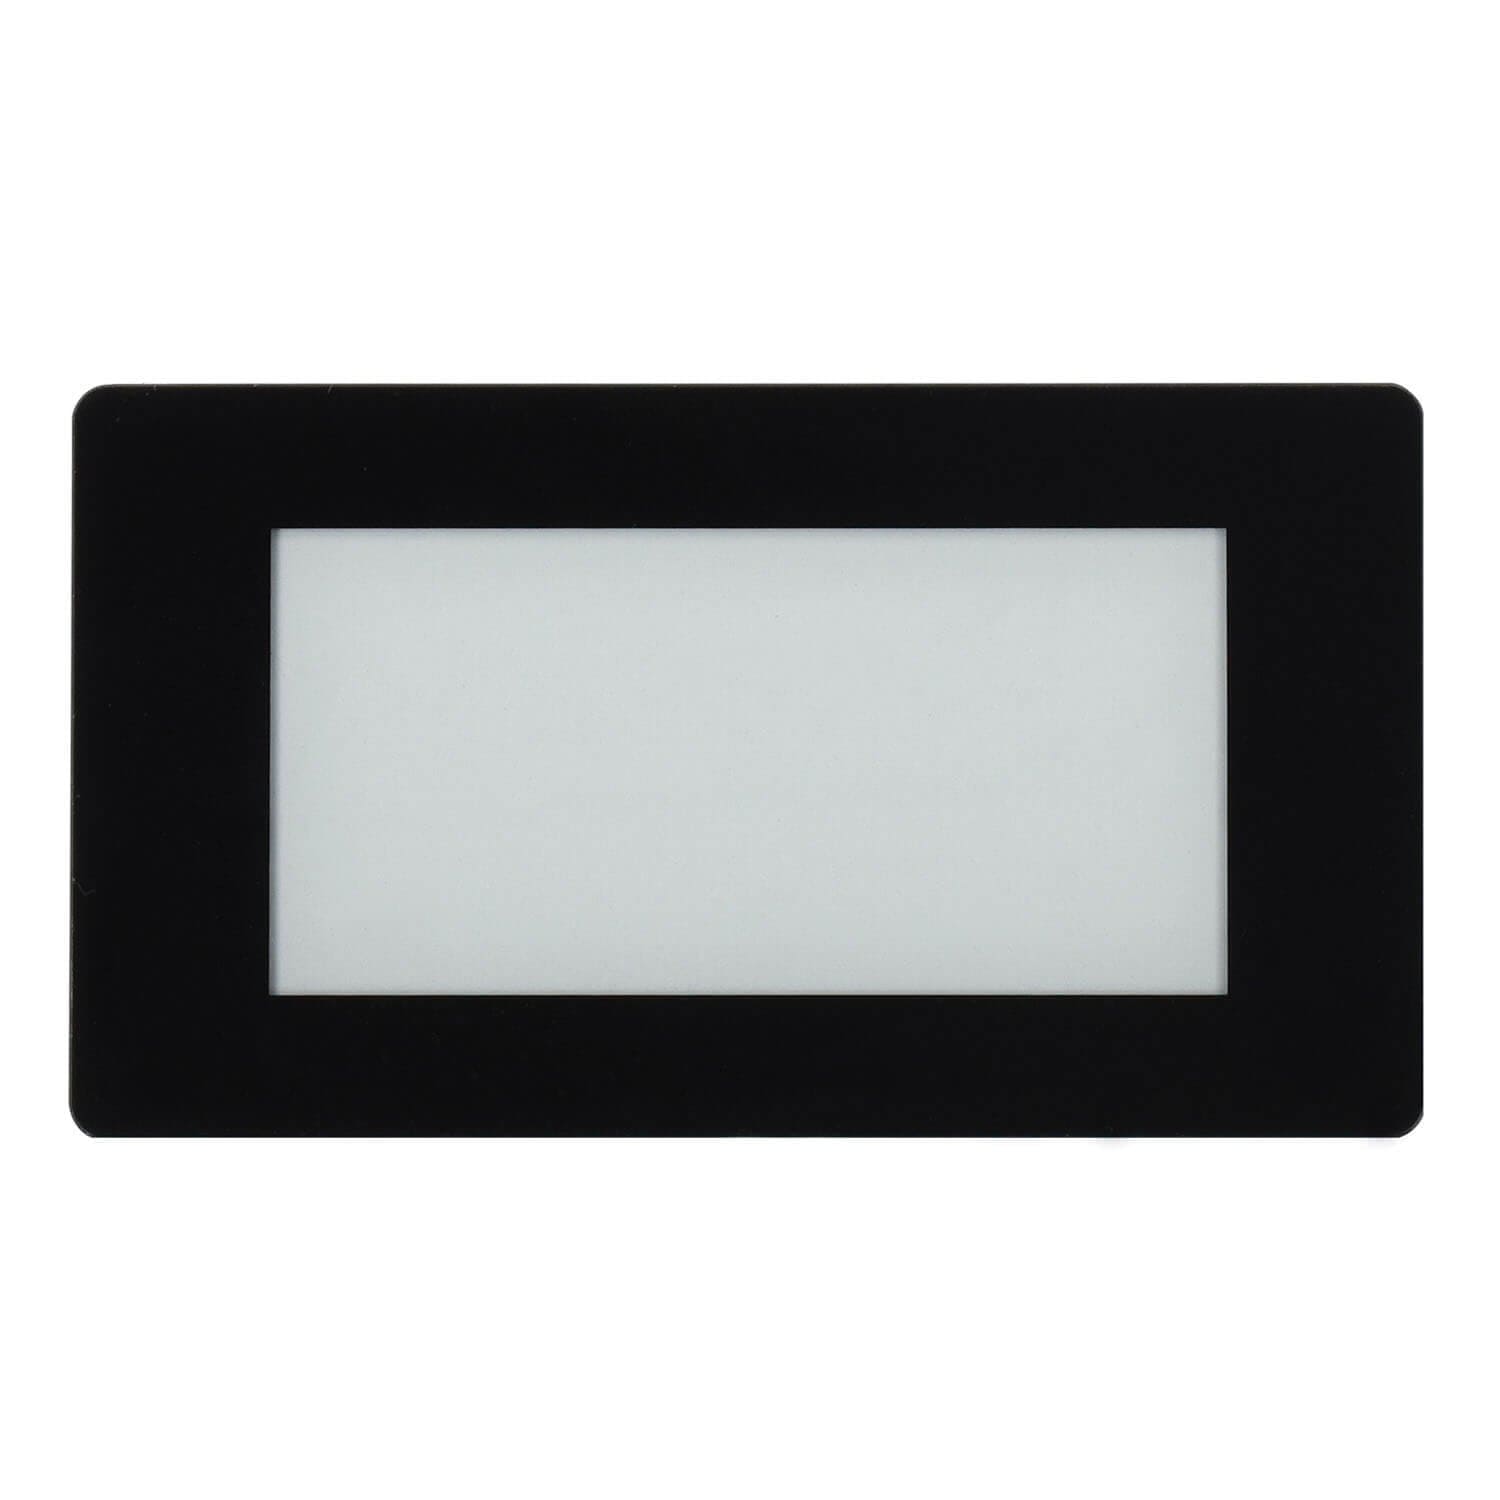 2.13" Touchscreen E-Paper HAT for Raspberry Pi (Black/White) (250×122) - The Pi Hut